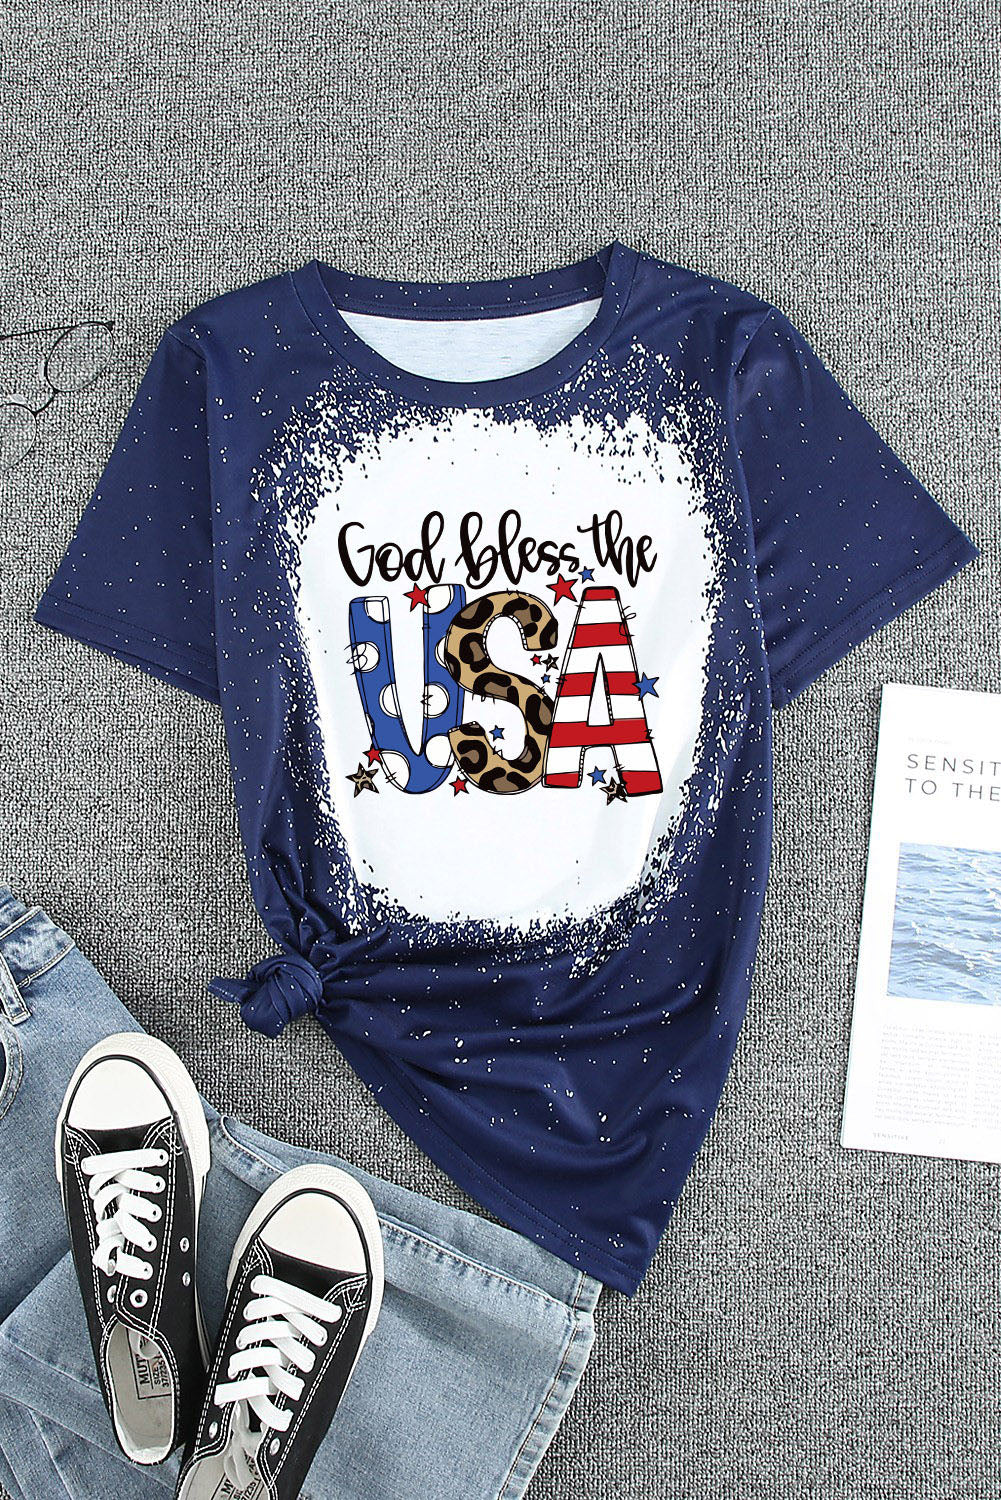 GOD BLESS THE USA Printed Tee Shirt  Sunset and Swim   